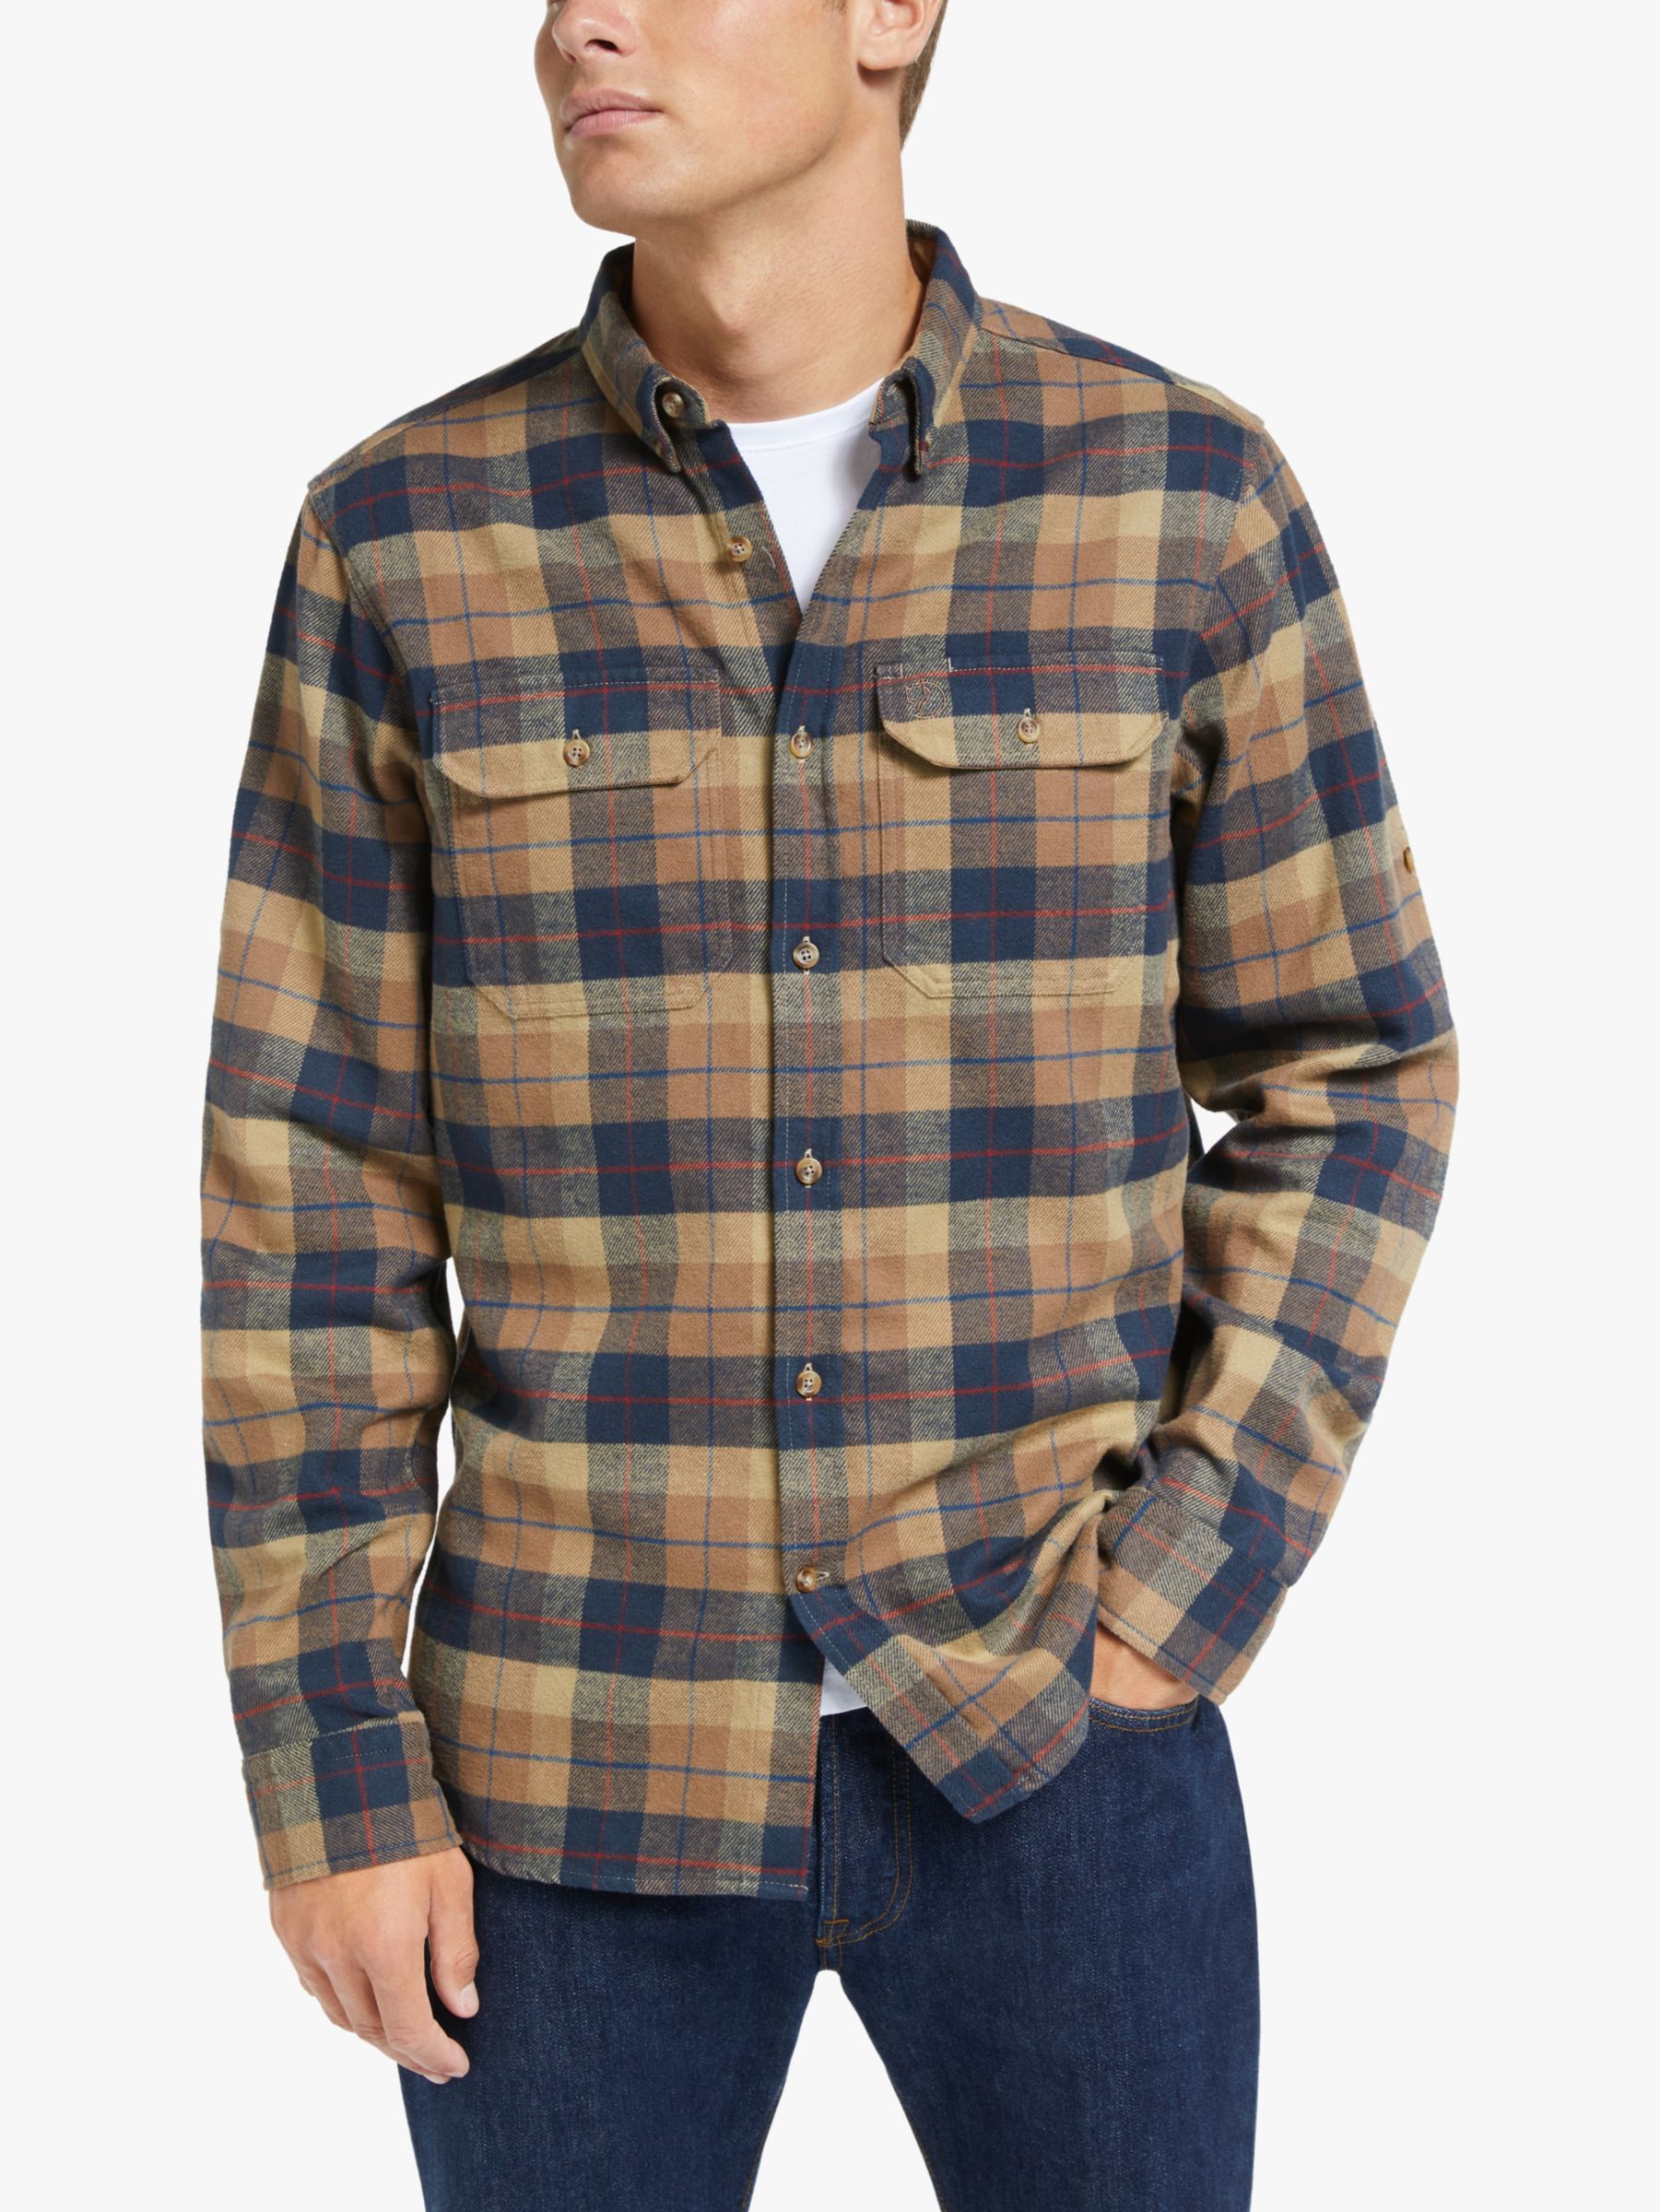 即完売品 OVY Heavy Flannel Check Shirts L